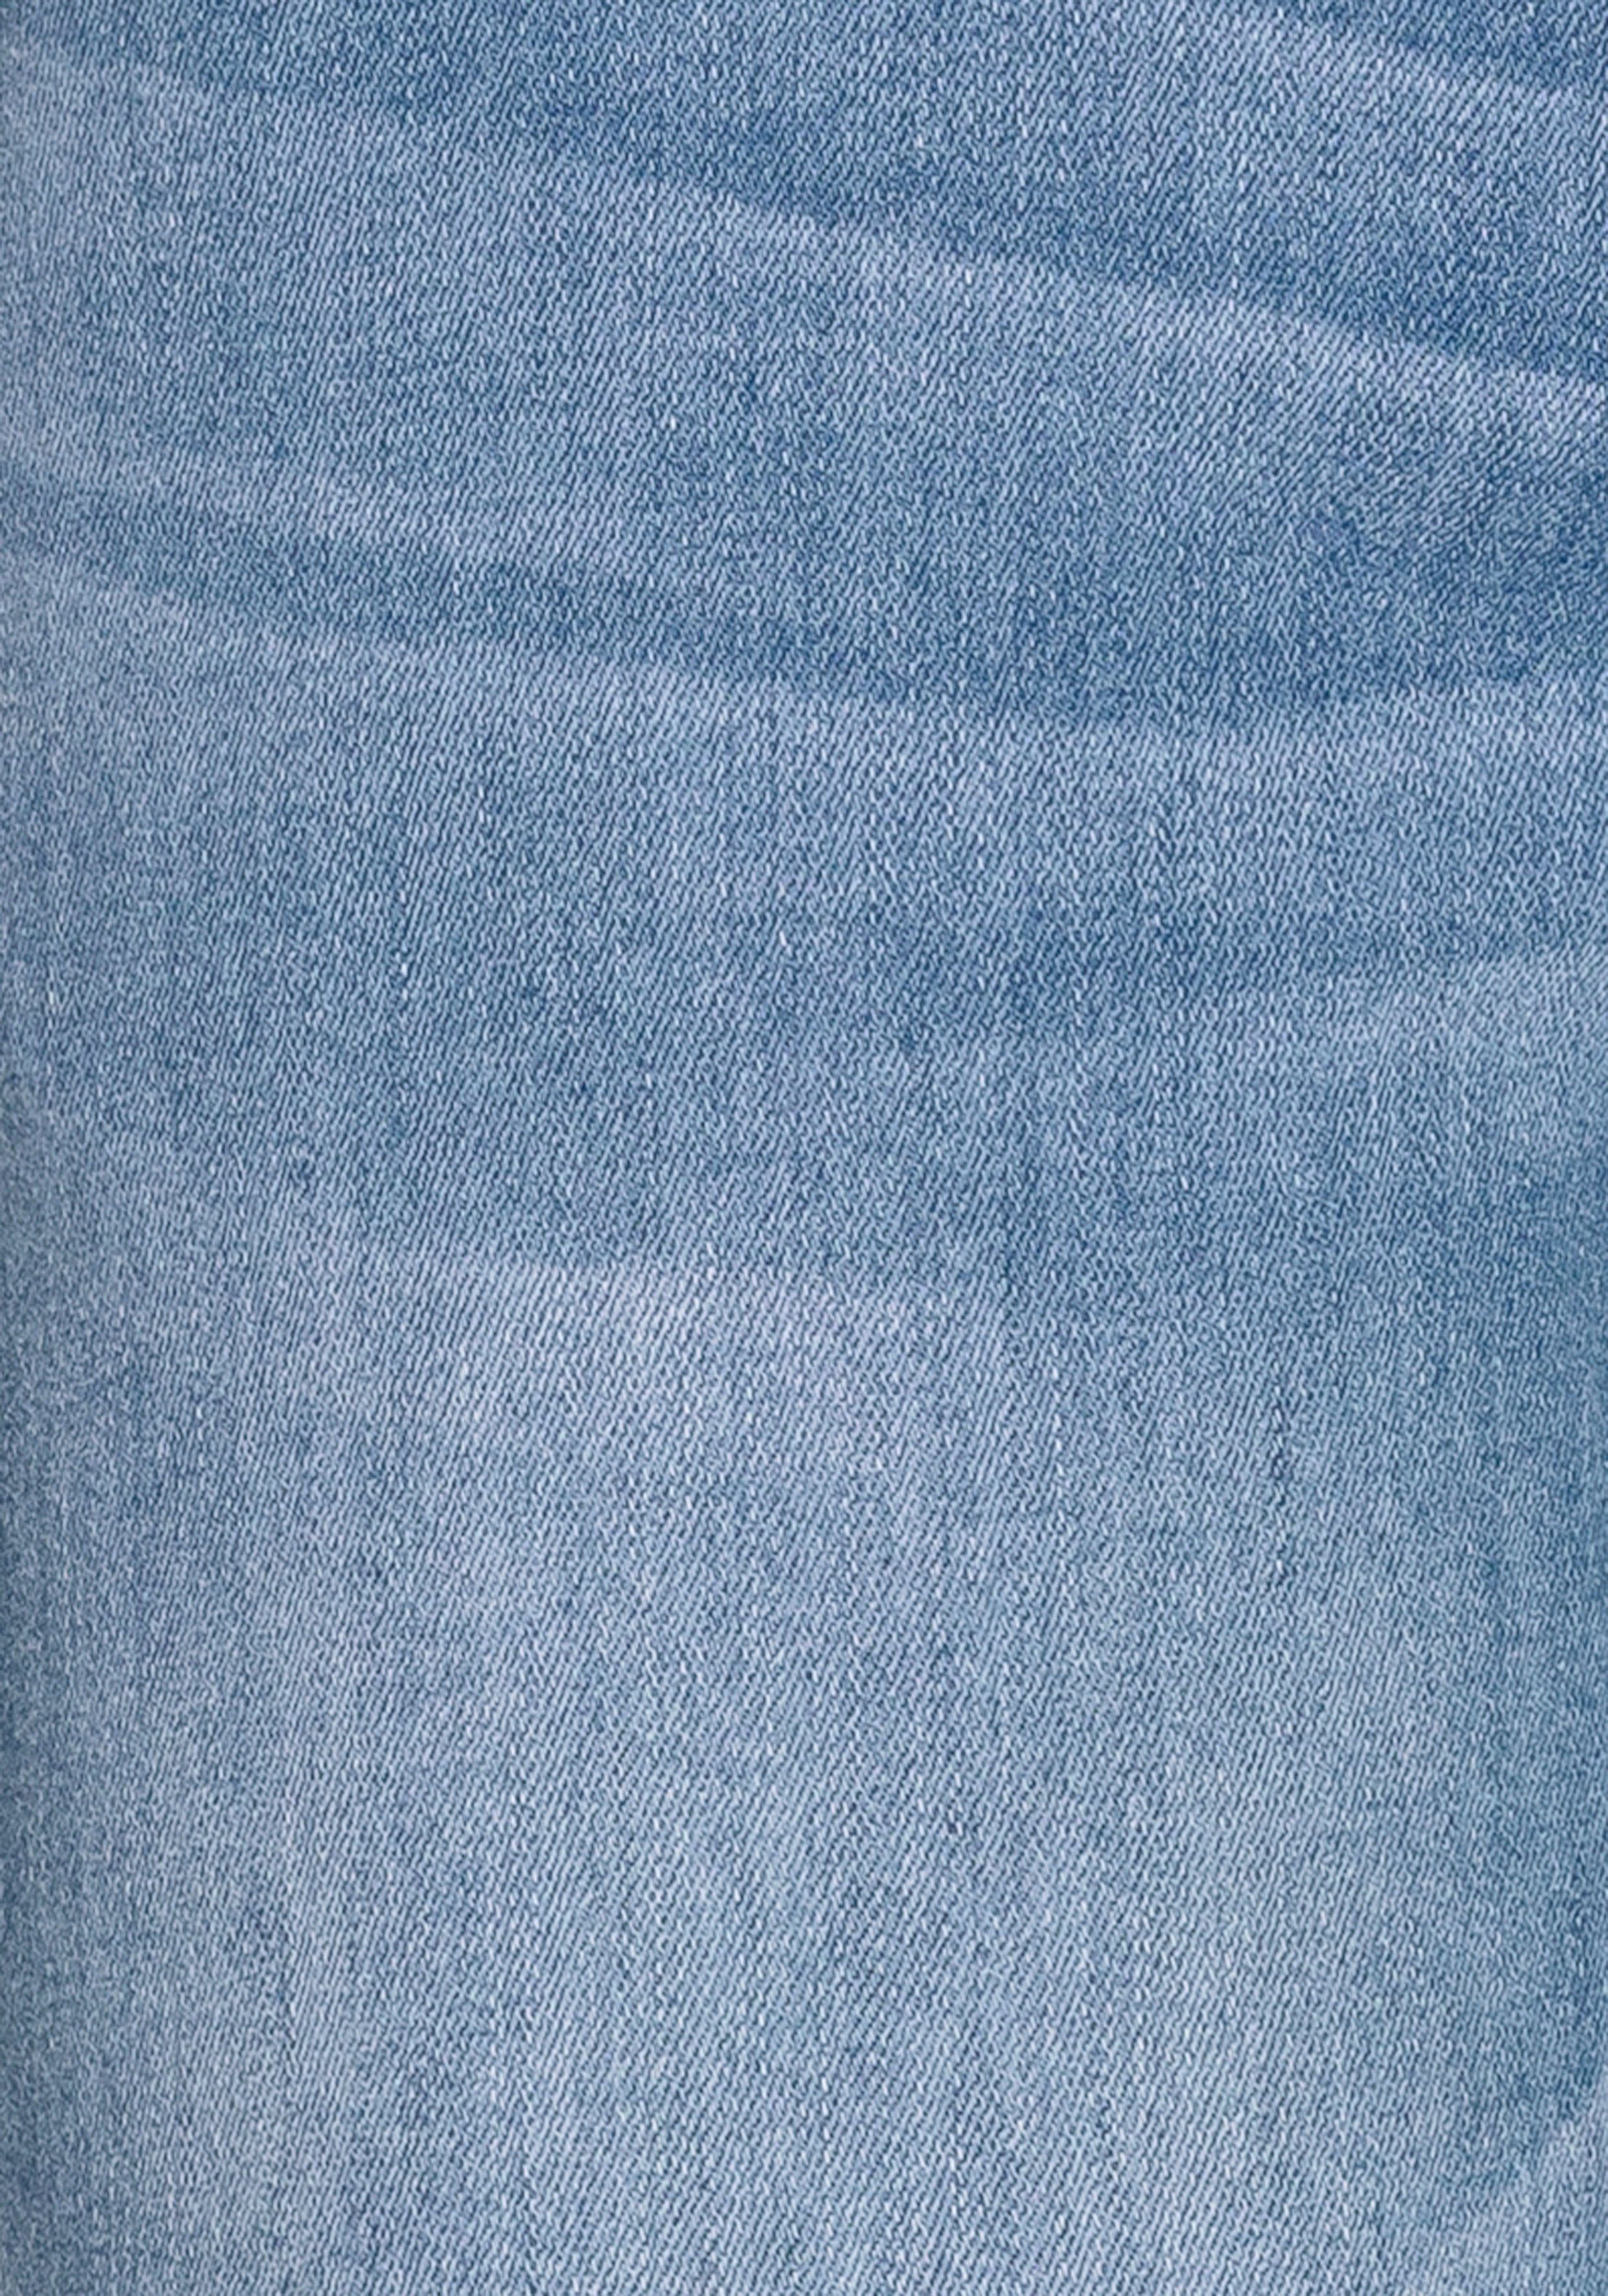 5-Pocket-Jeans wassersparende Wash ariaMS H.I.S durch Ozon Produktion ökologische,